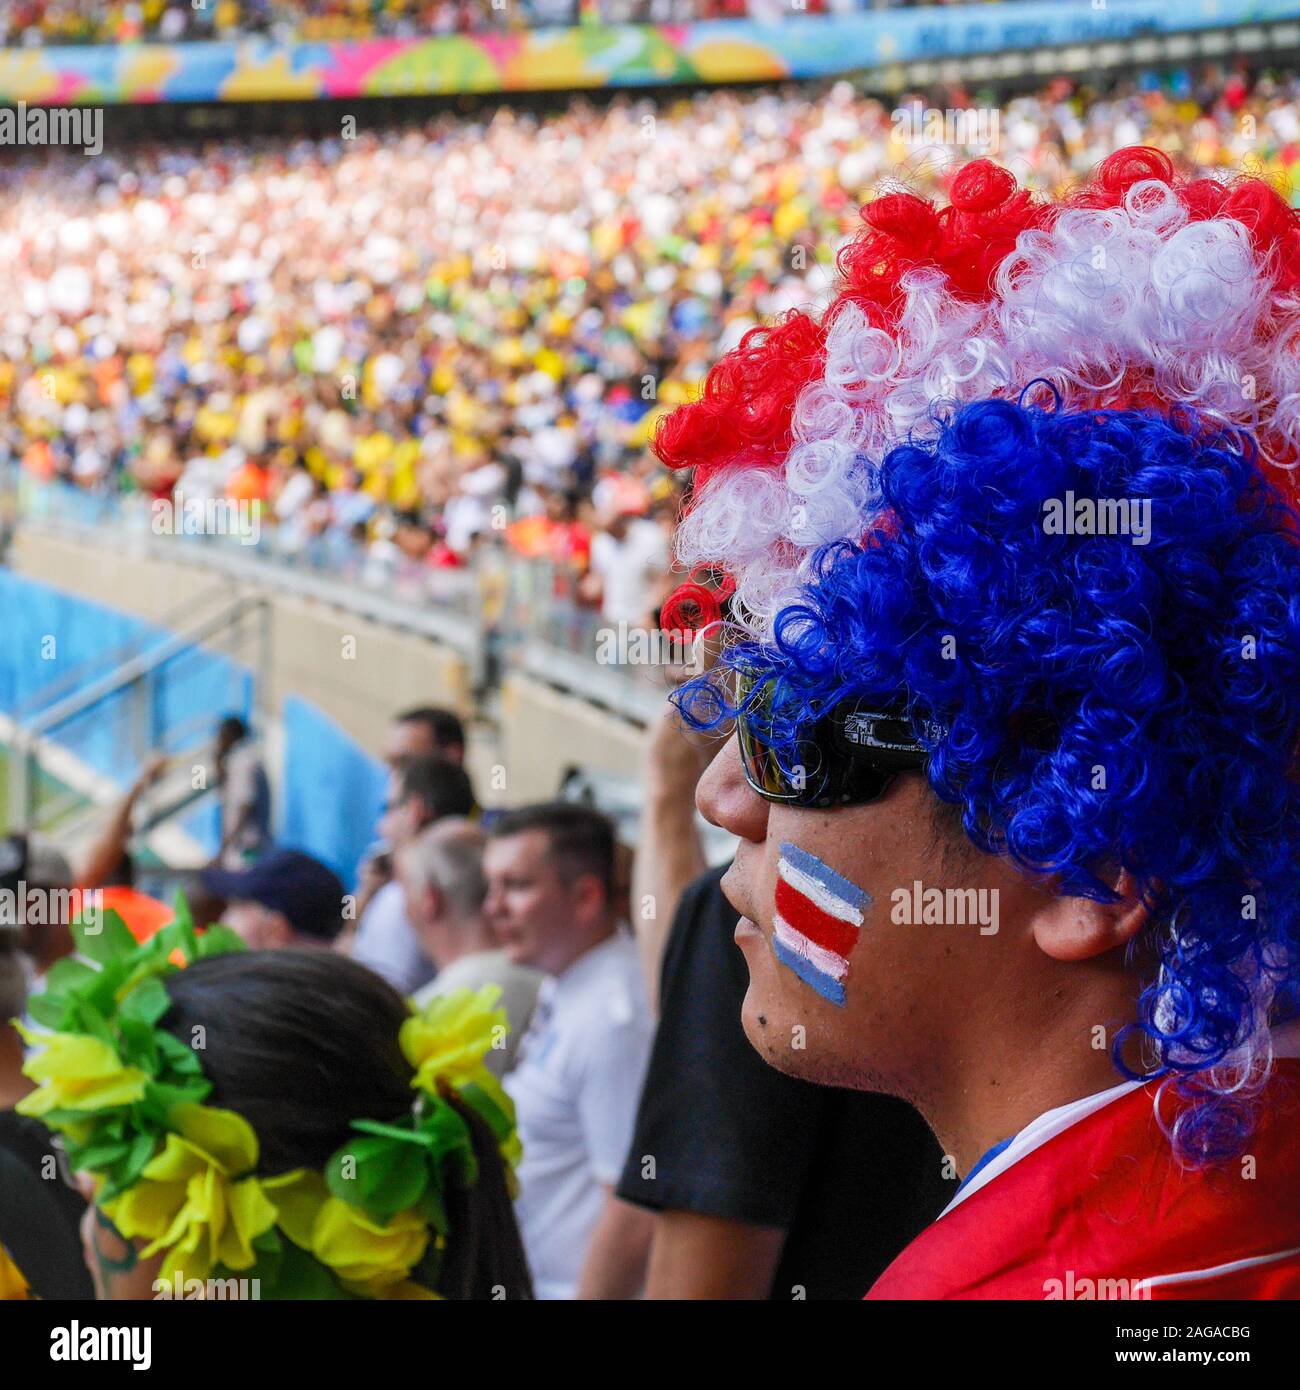 Ein Costa Rica Fußballfan seine Nationalmannschaft Unterstützung bei einem internationalen Fußball-Spiel, England spielte in der WM 2014. Stockfoto